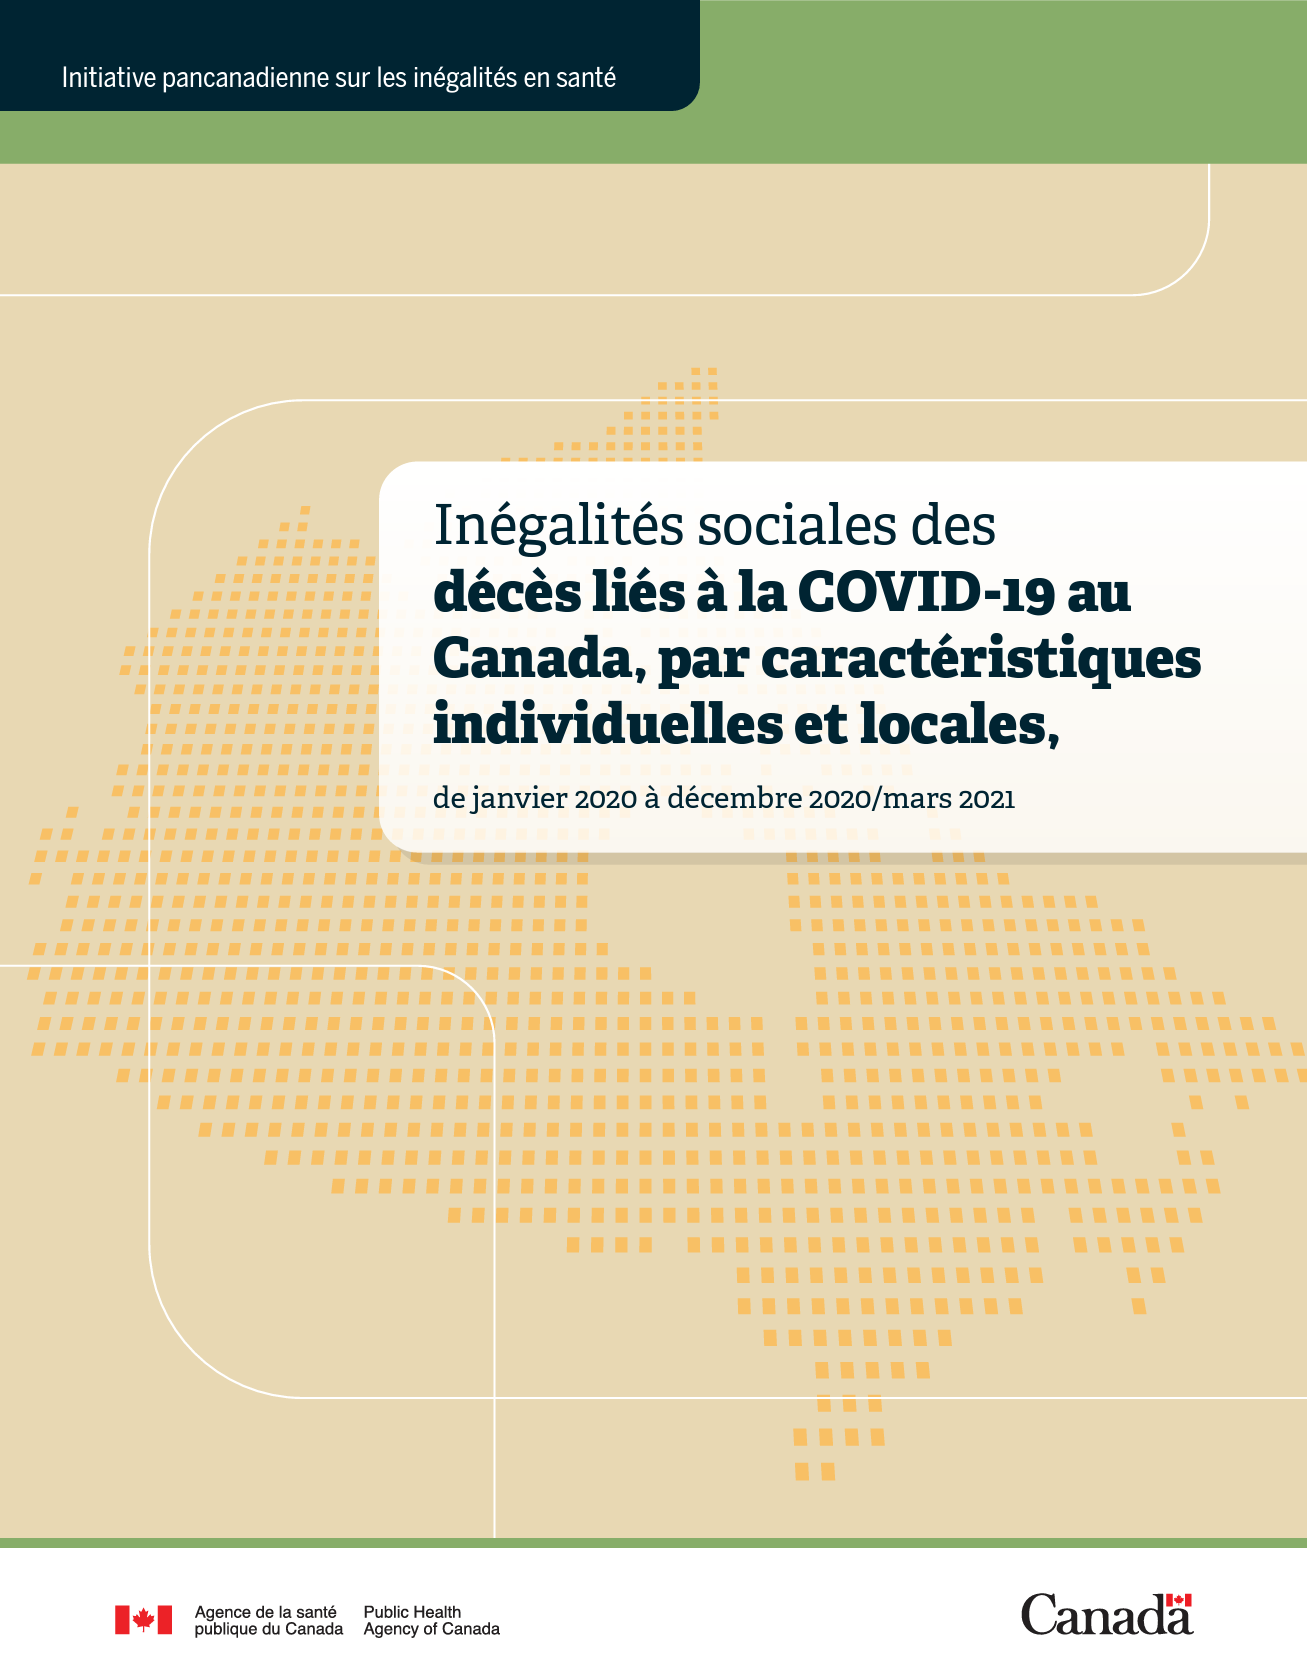 Inégalités sociales des décès liés à la COVID-19 au Canada, par caractéristiques individuelles et locales, de janvier 2020 à décembre 2020/mars 2021